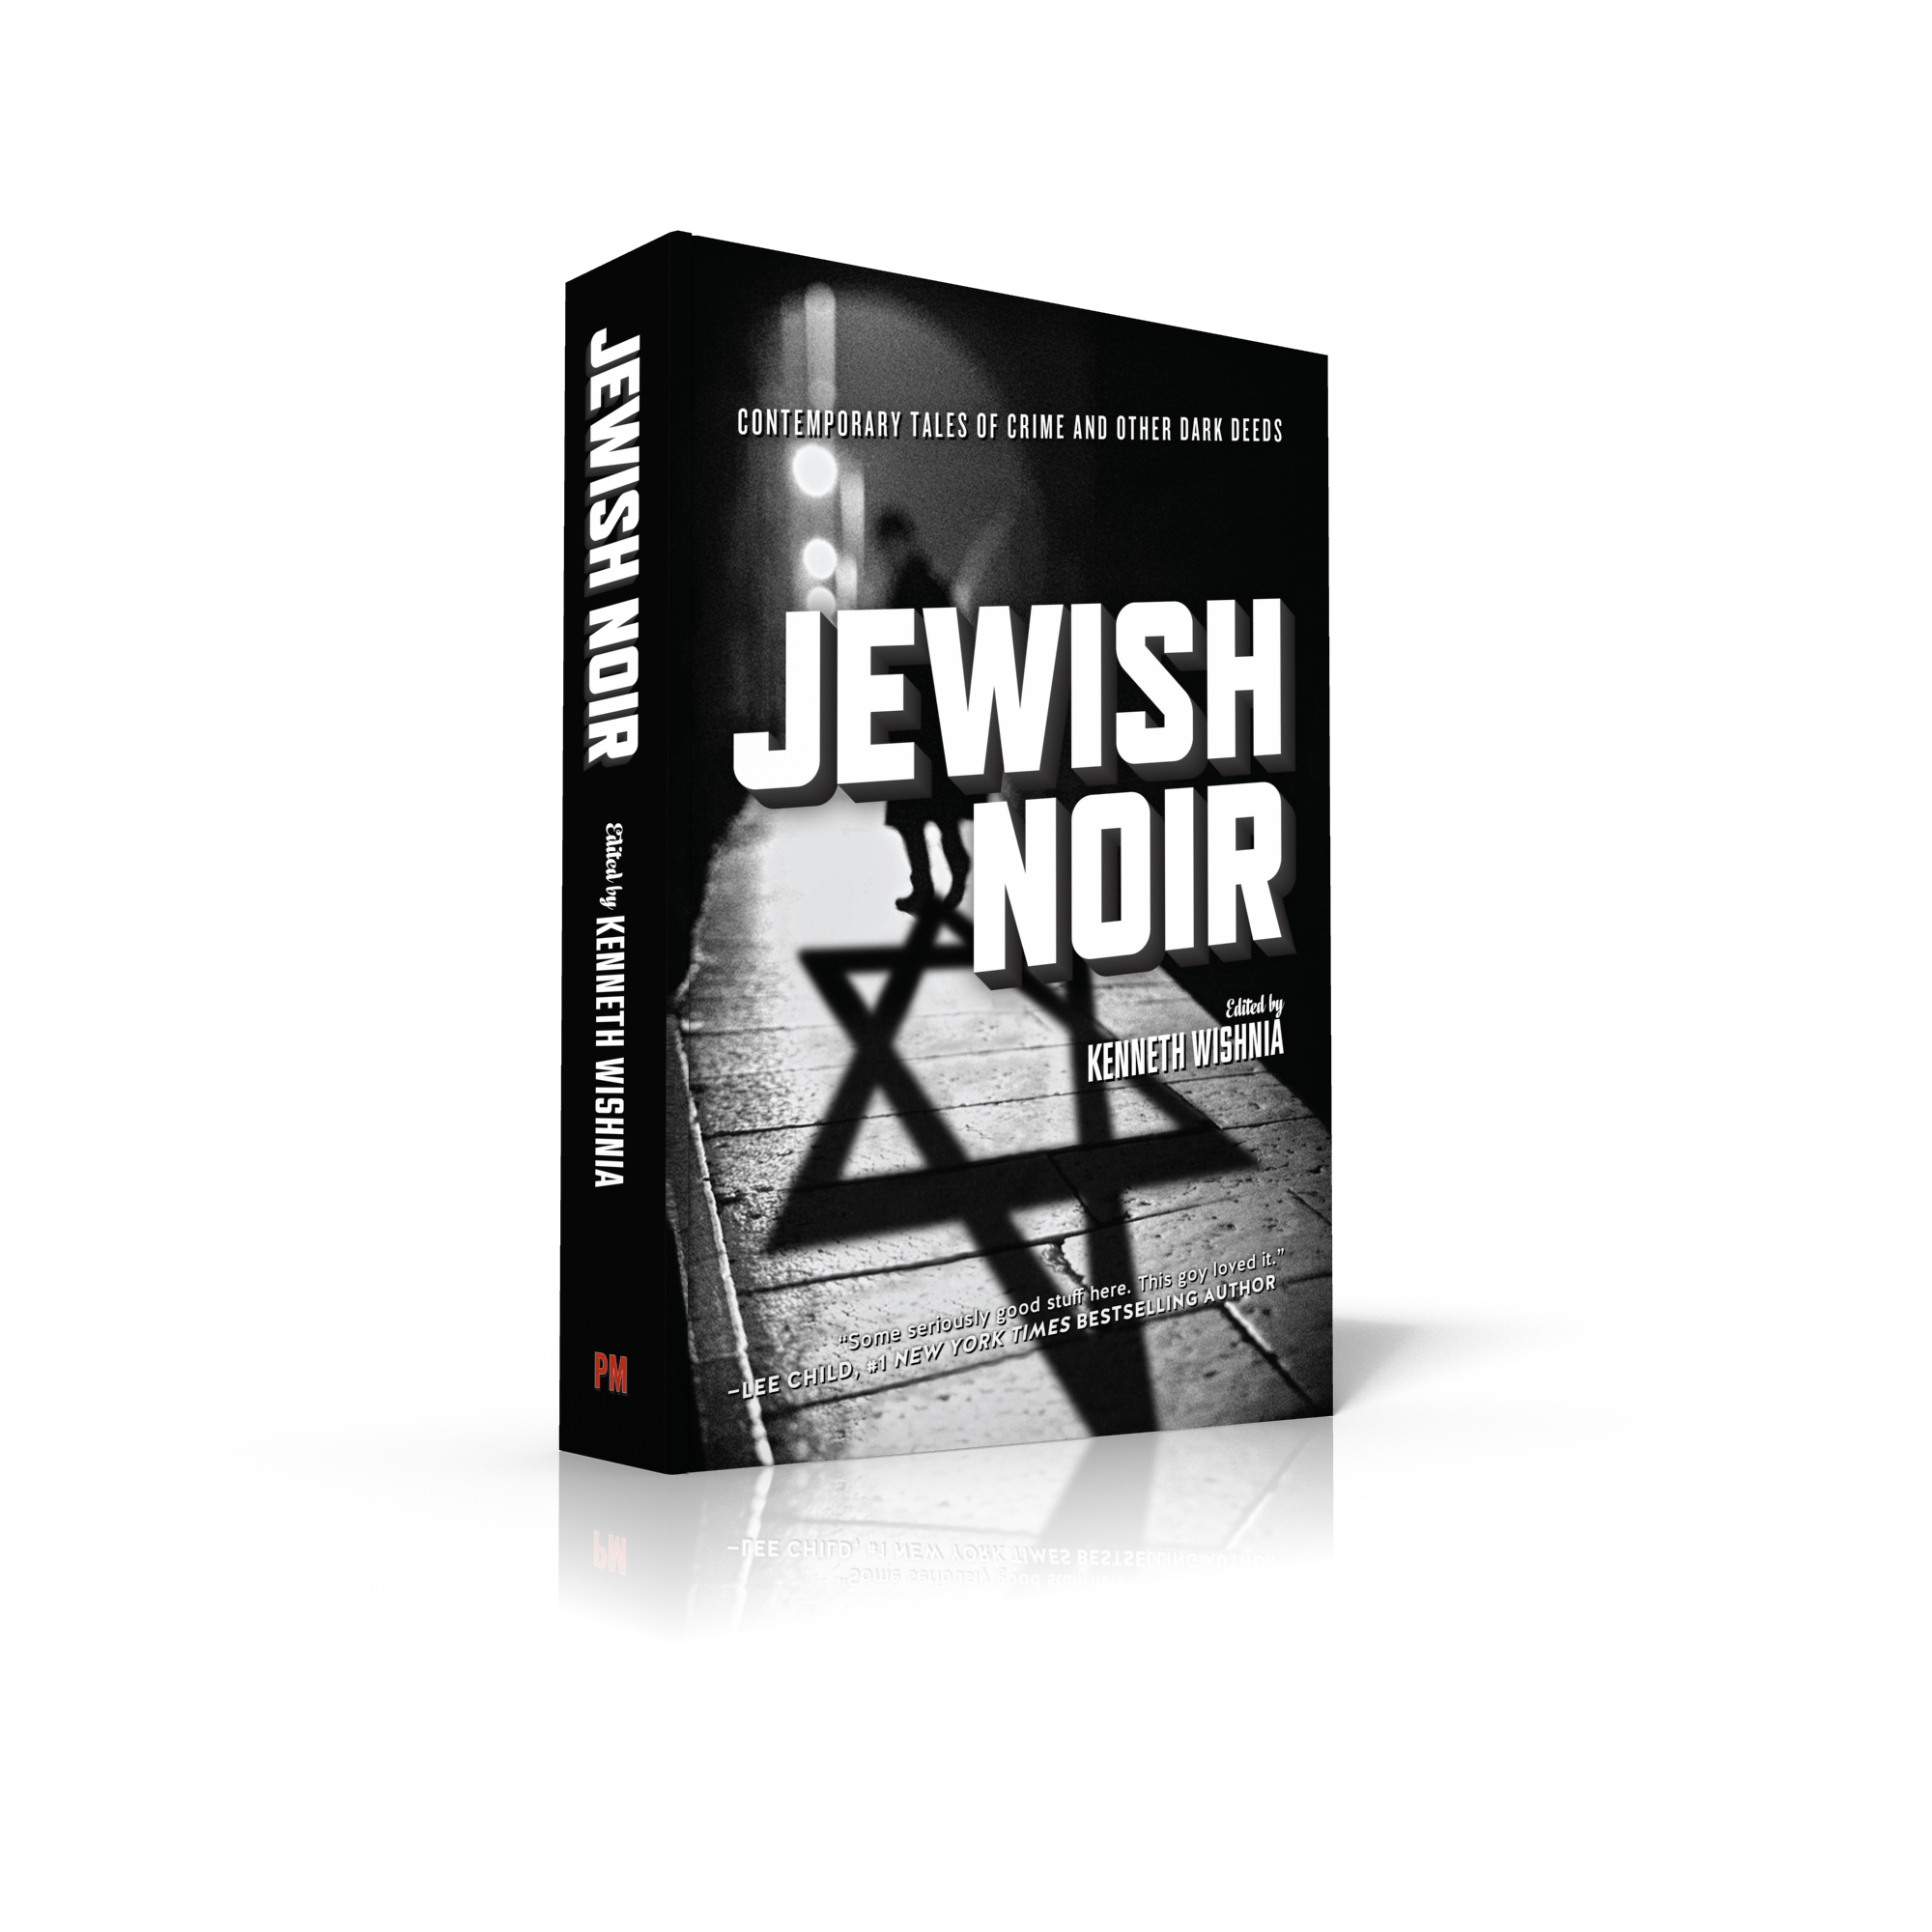 Jewish_noir_3D.jpg